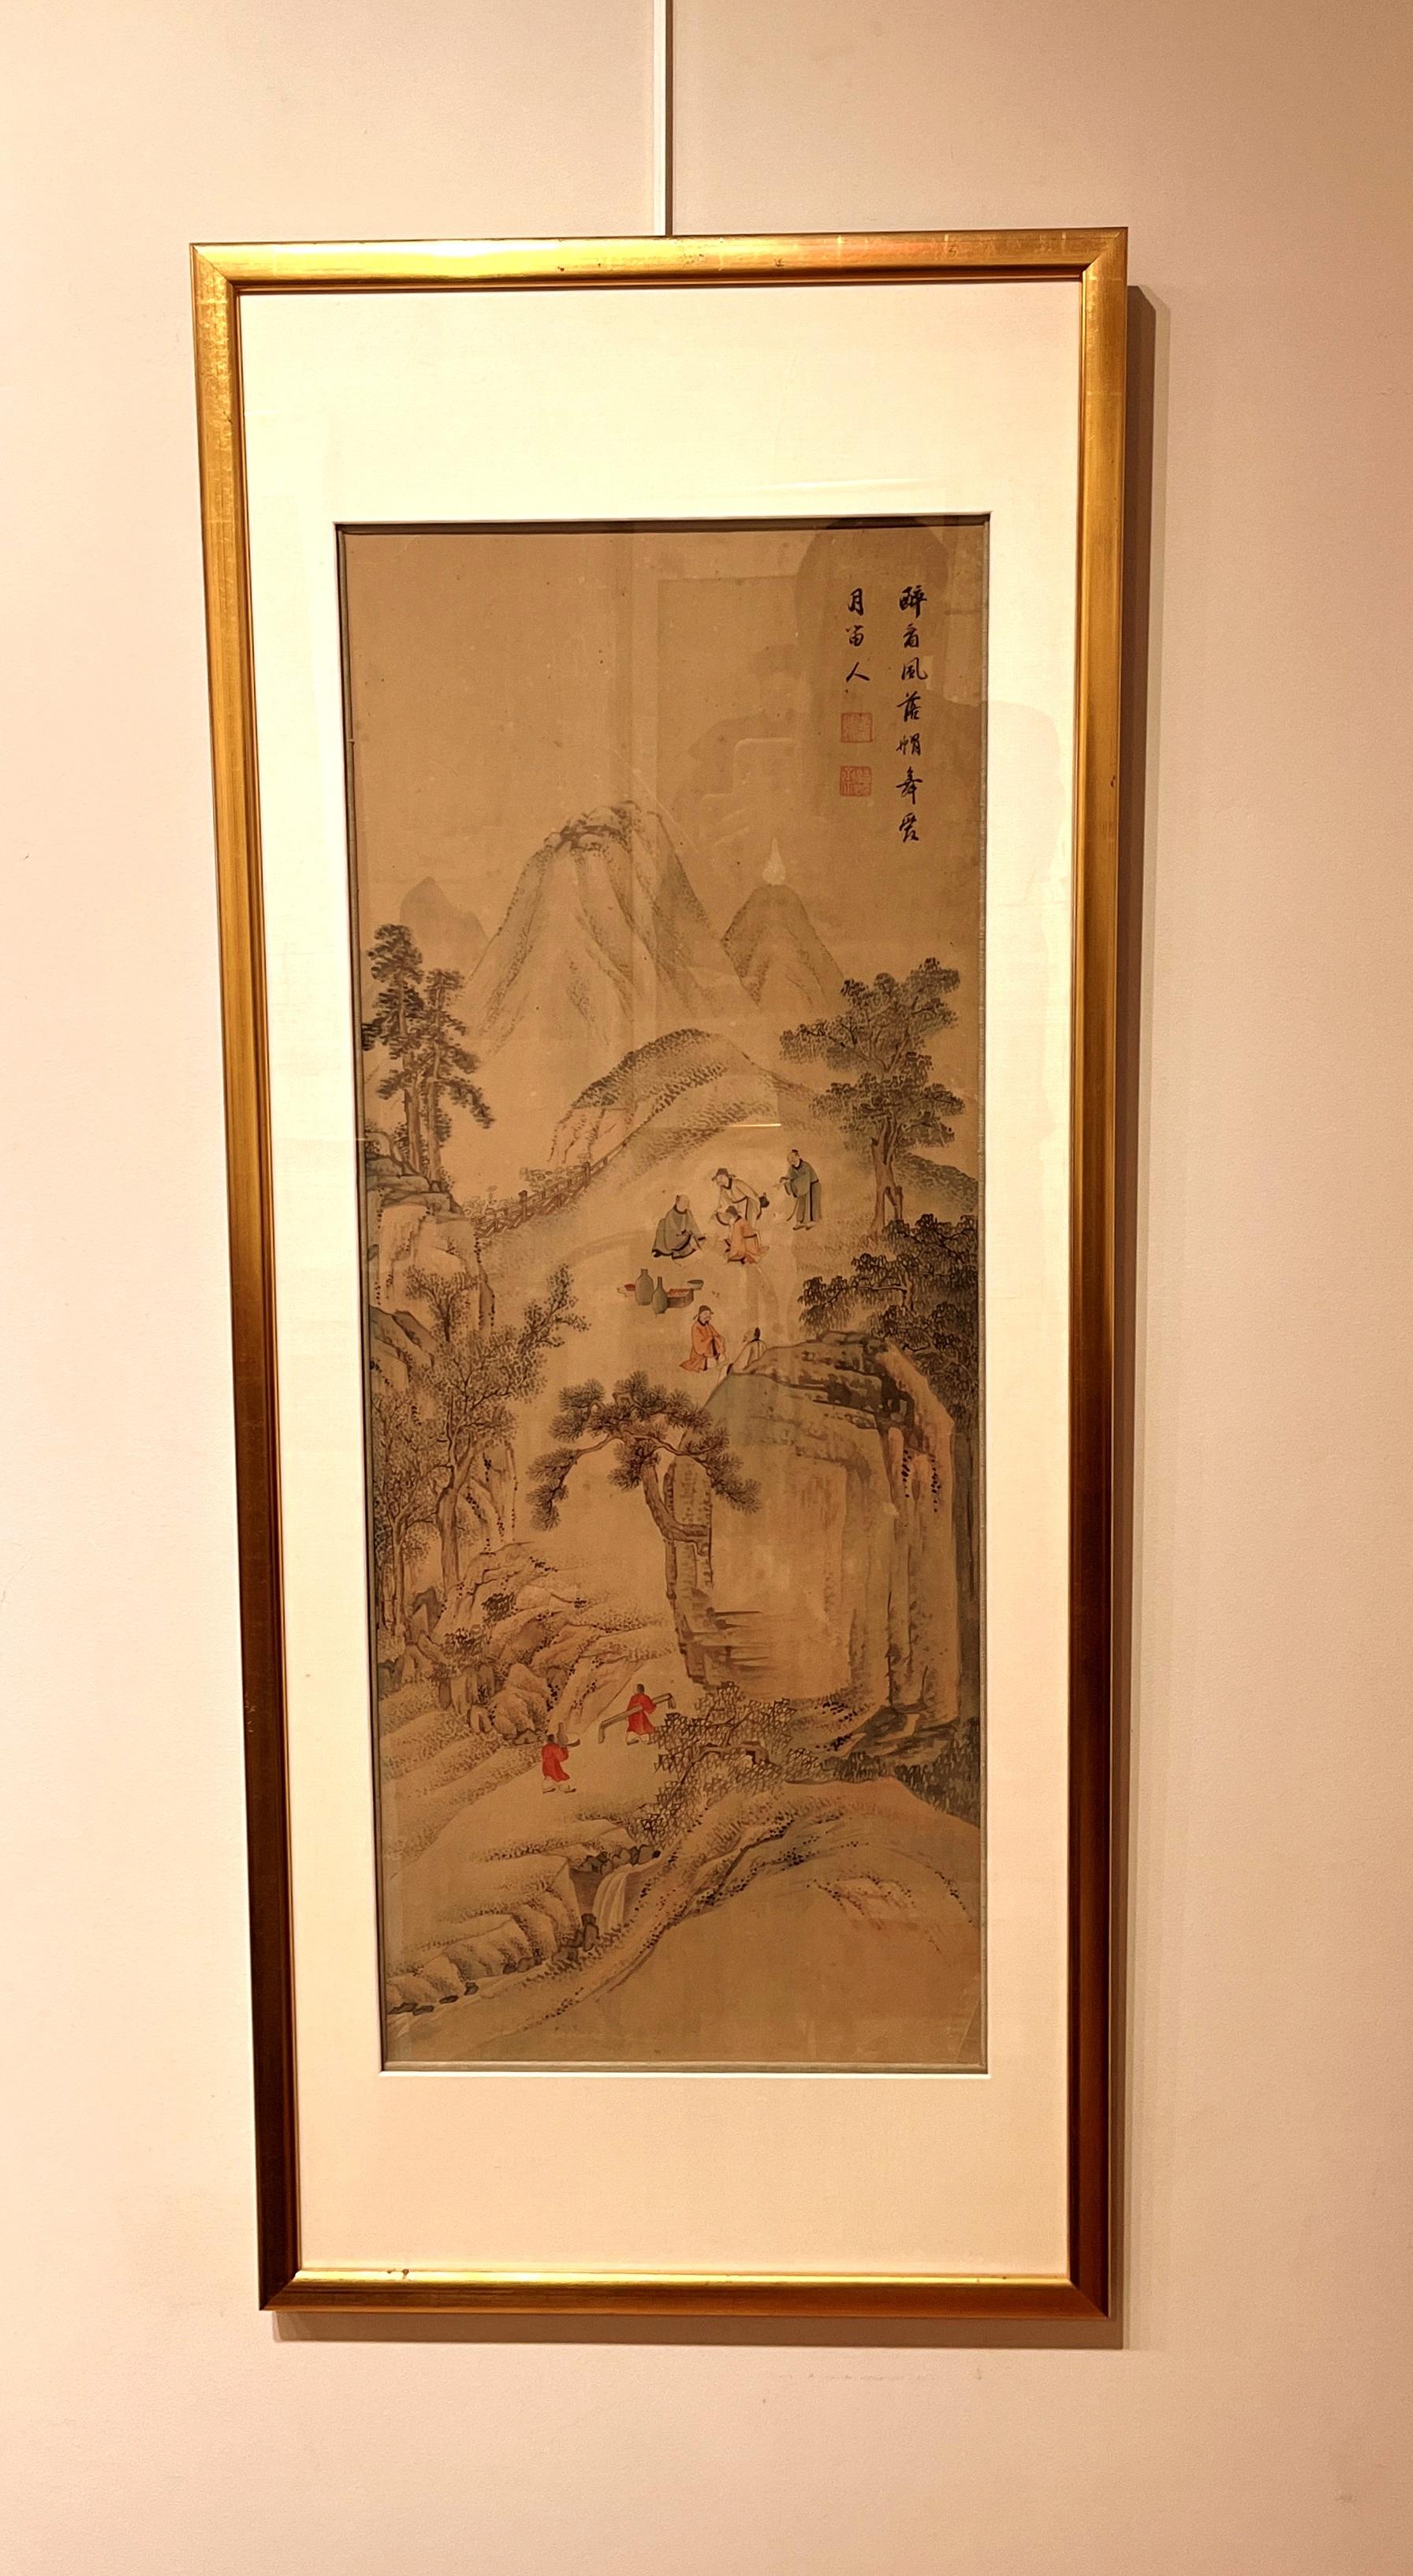 Elegantes chinesisches Pinselgemälde einer Landschaft, Gelehrte üben Kunst in den Bergen, 19.
Tinte und Farbe auf Papier
Konservierung gerahmt
Gesamtgröße:  46,5